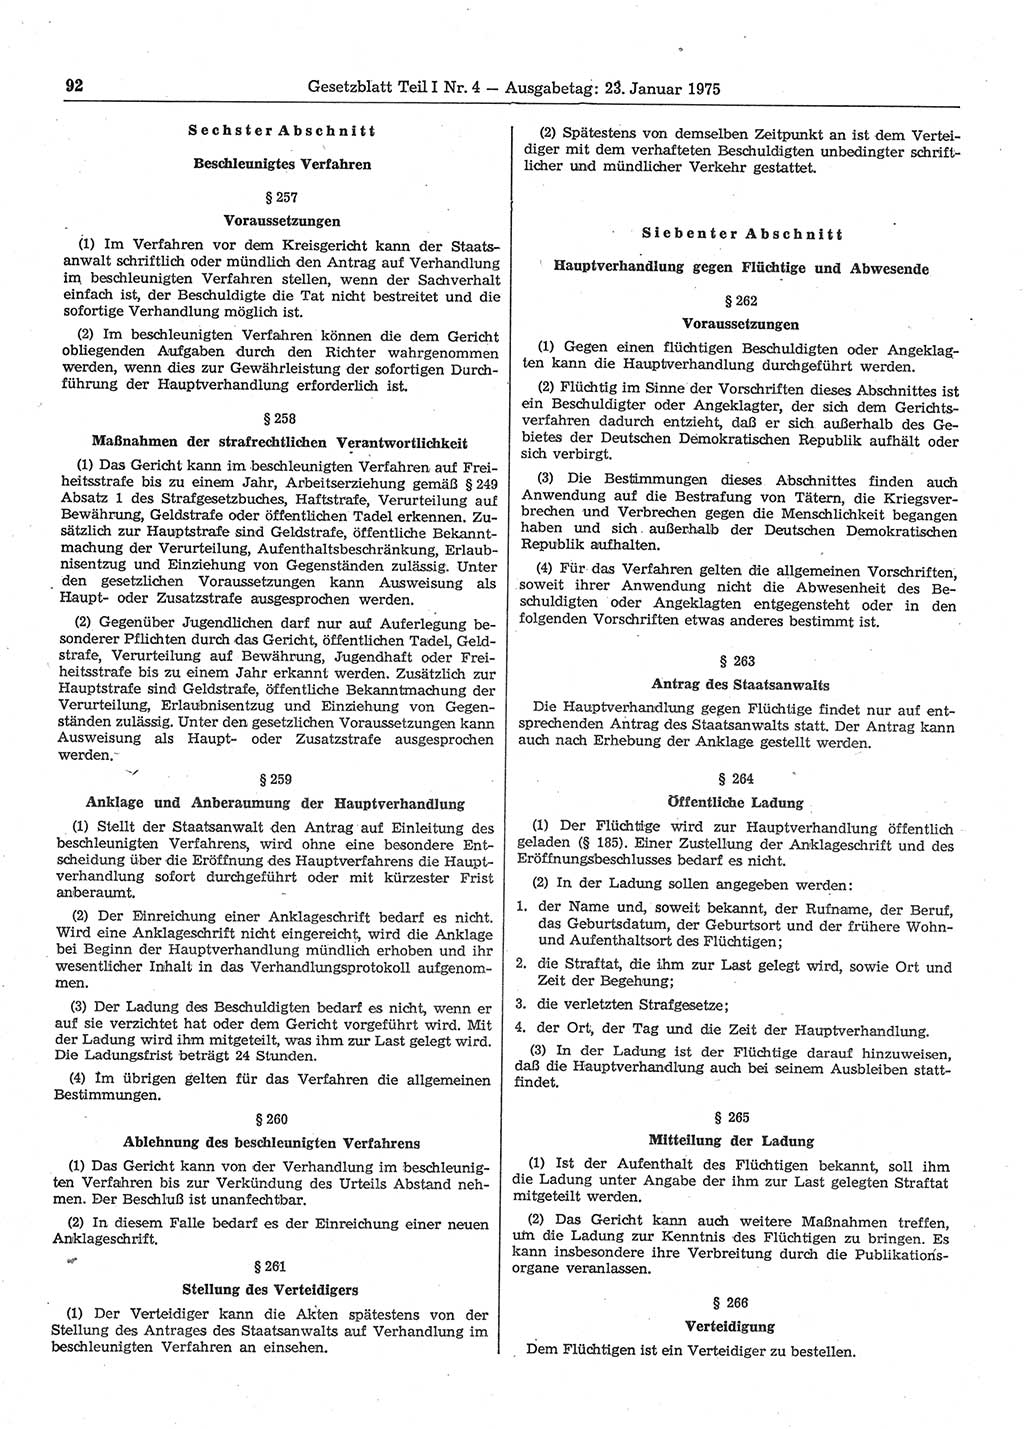 Gesetzblatt (GBl.) der Deutschen Demokratischen Republik (DDR) Teil Ⅰ 1975, Seite 92 (GBl. DDR Ⅰ 1975, S. 92)